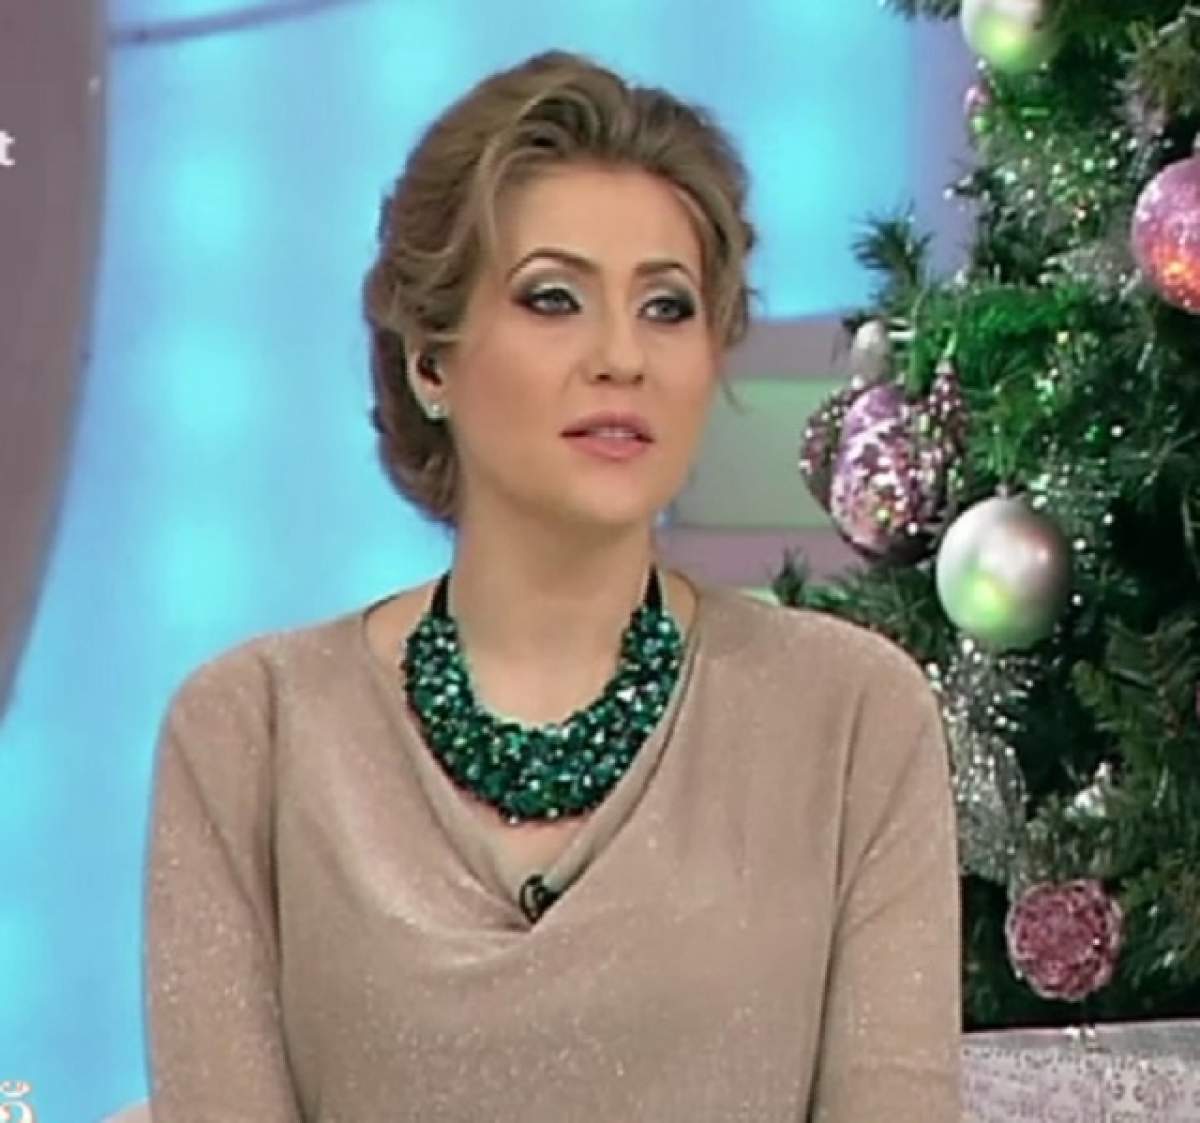 A MURIT în timp ce ea era în emisiune! Mirela Boureanu Vaida şi-a exprimat regretul: "Condoleanţe! Dumnezeu să-l ierte!"